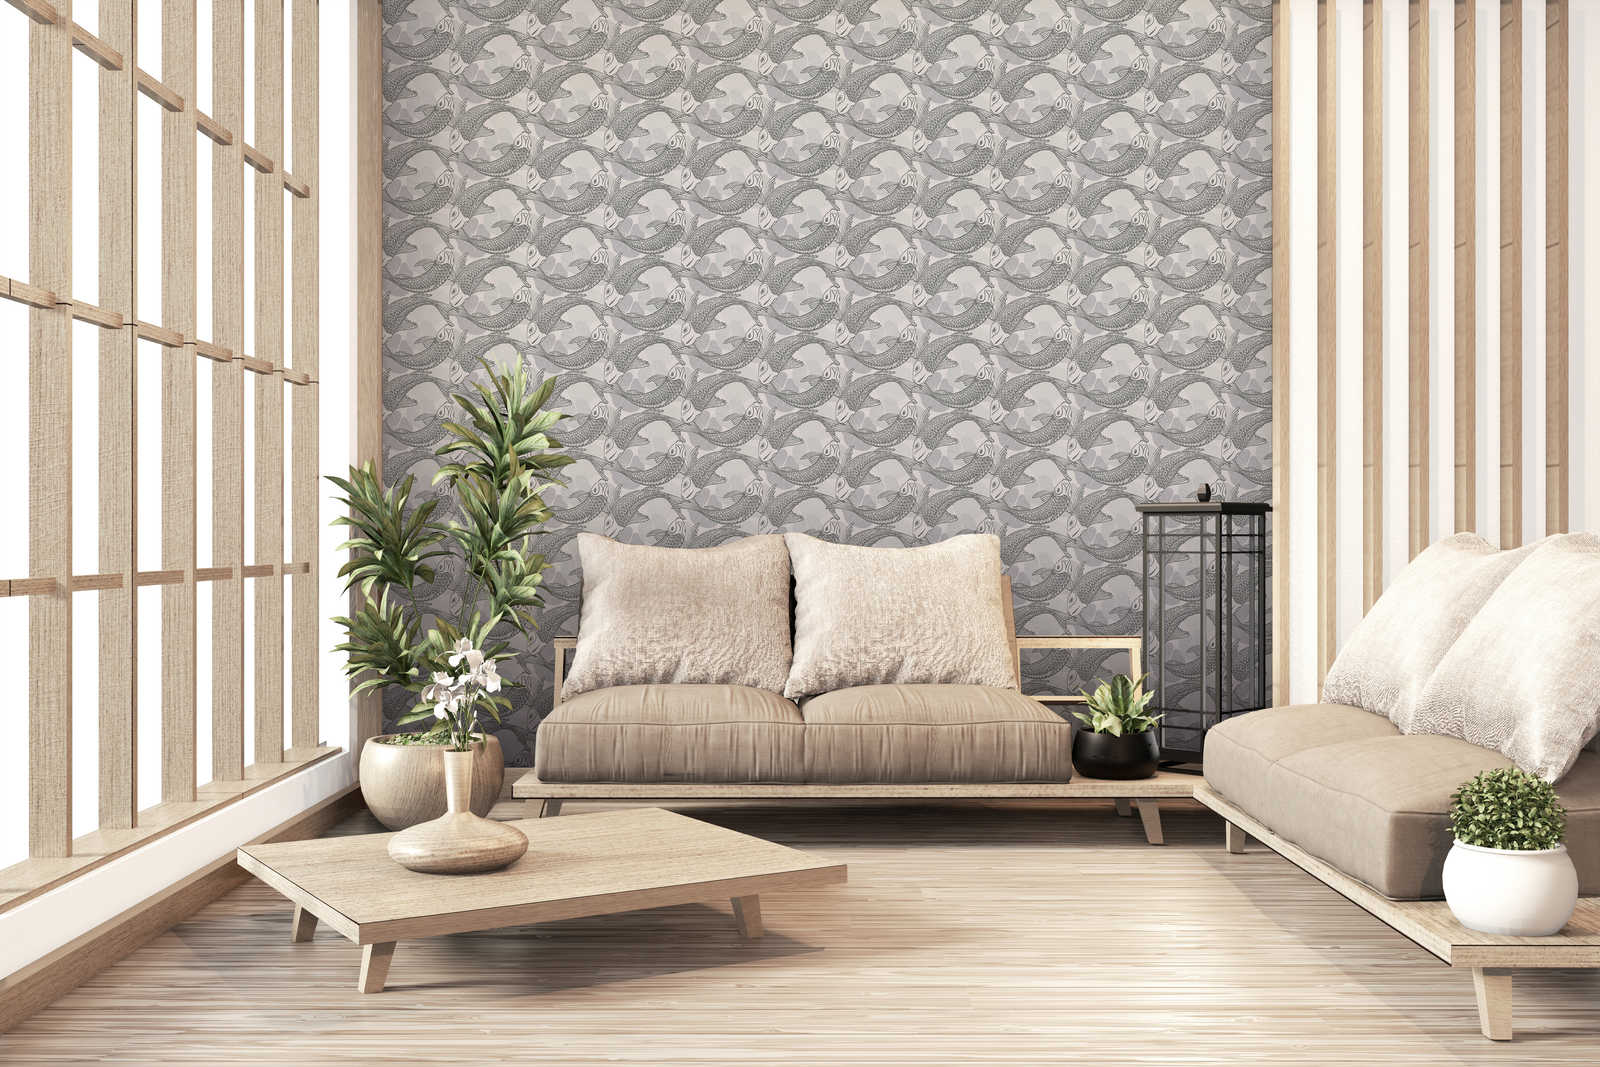             behang koi design in aziatische stijl met metallic effect - beige, grijs, metallic
        